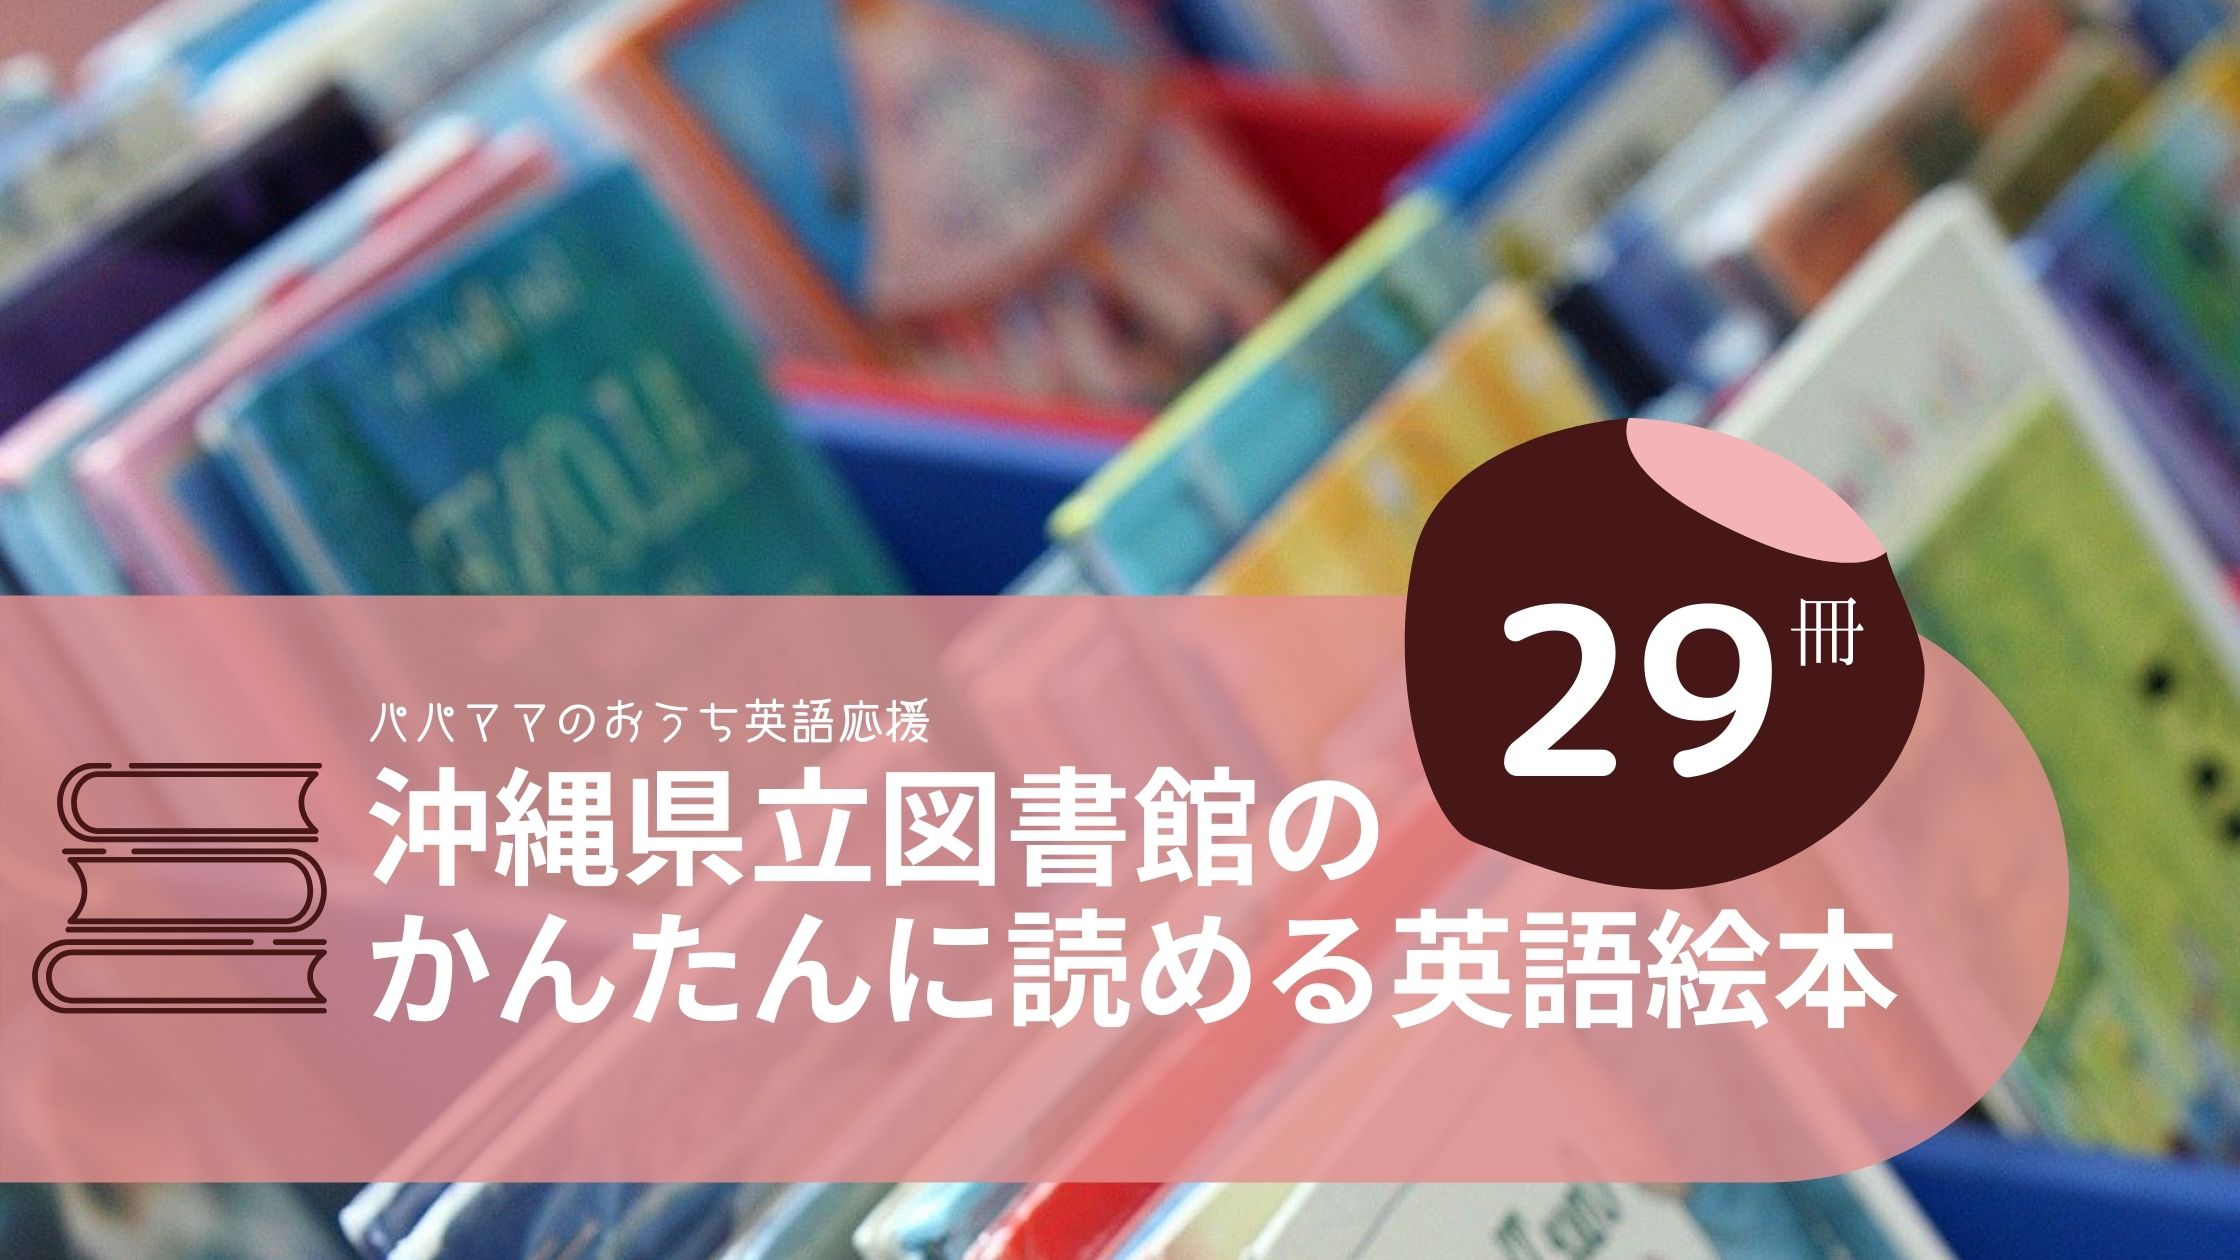 沖縄県立図書館のかんたんに読める英語絵本29冊 おうち英語での読み聞かせにおすすめ ちょこリンガル